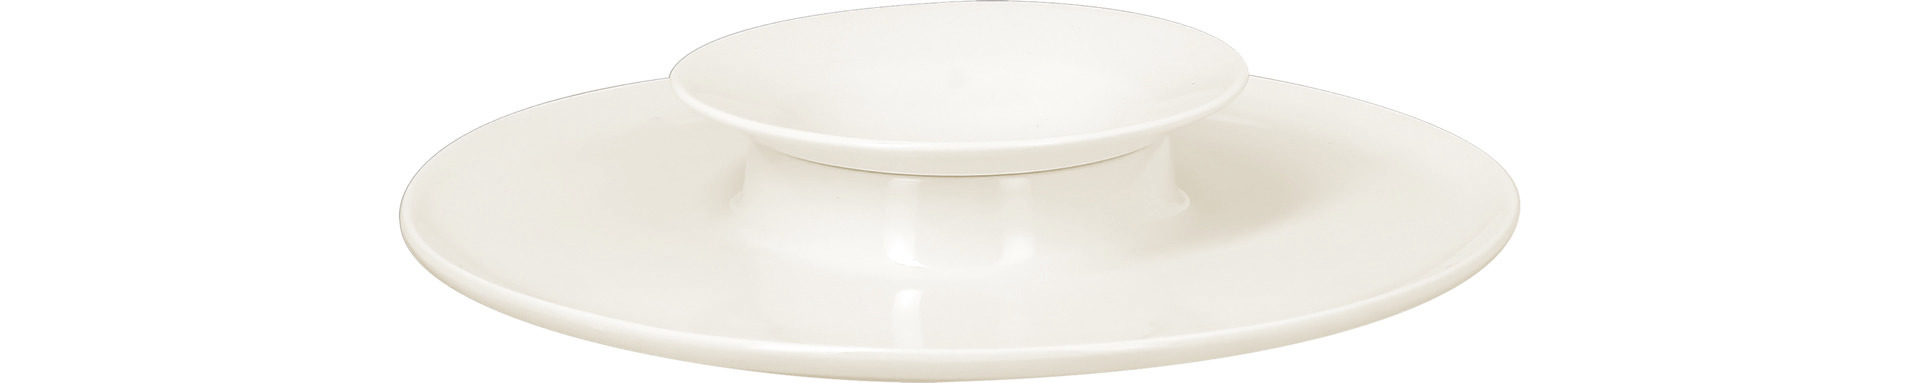 Teller rund mit Mittelteil tief chill 260 mm plain-white